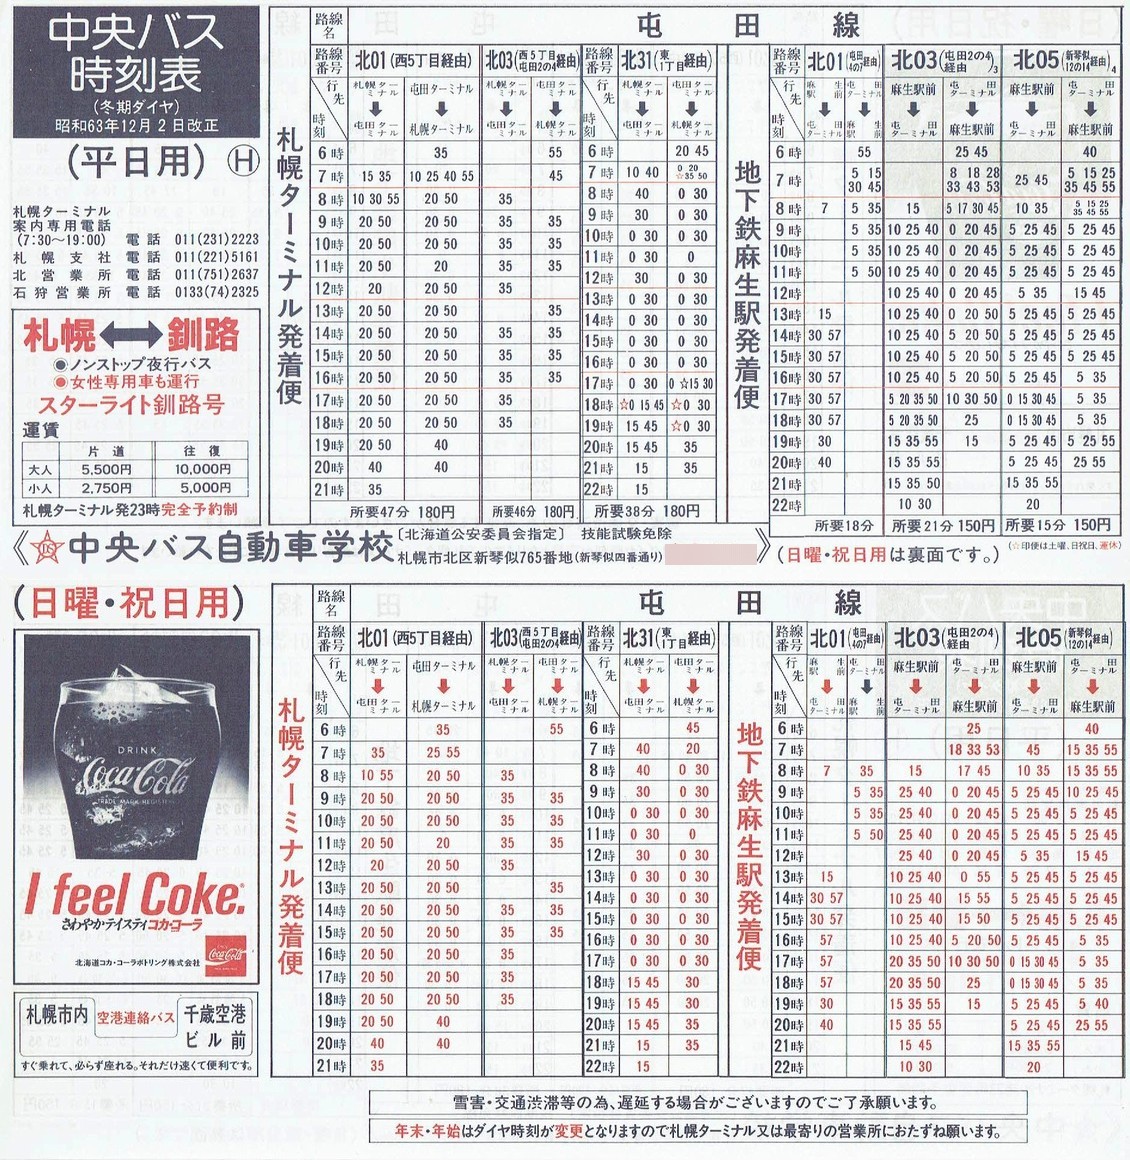 1988-12-02改正_北海道中央バス(札幌)_札幌市内線時刻表Ｈ